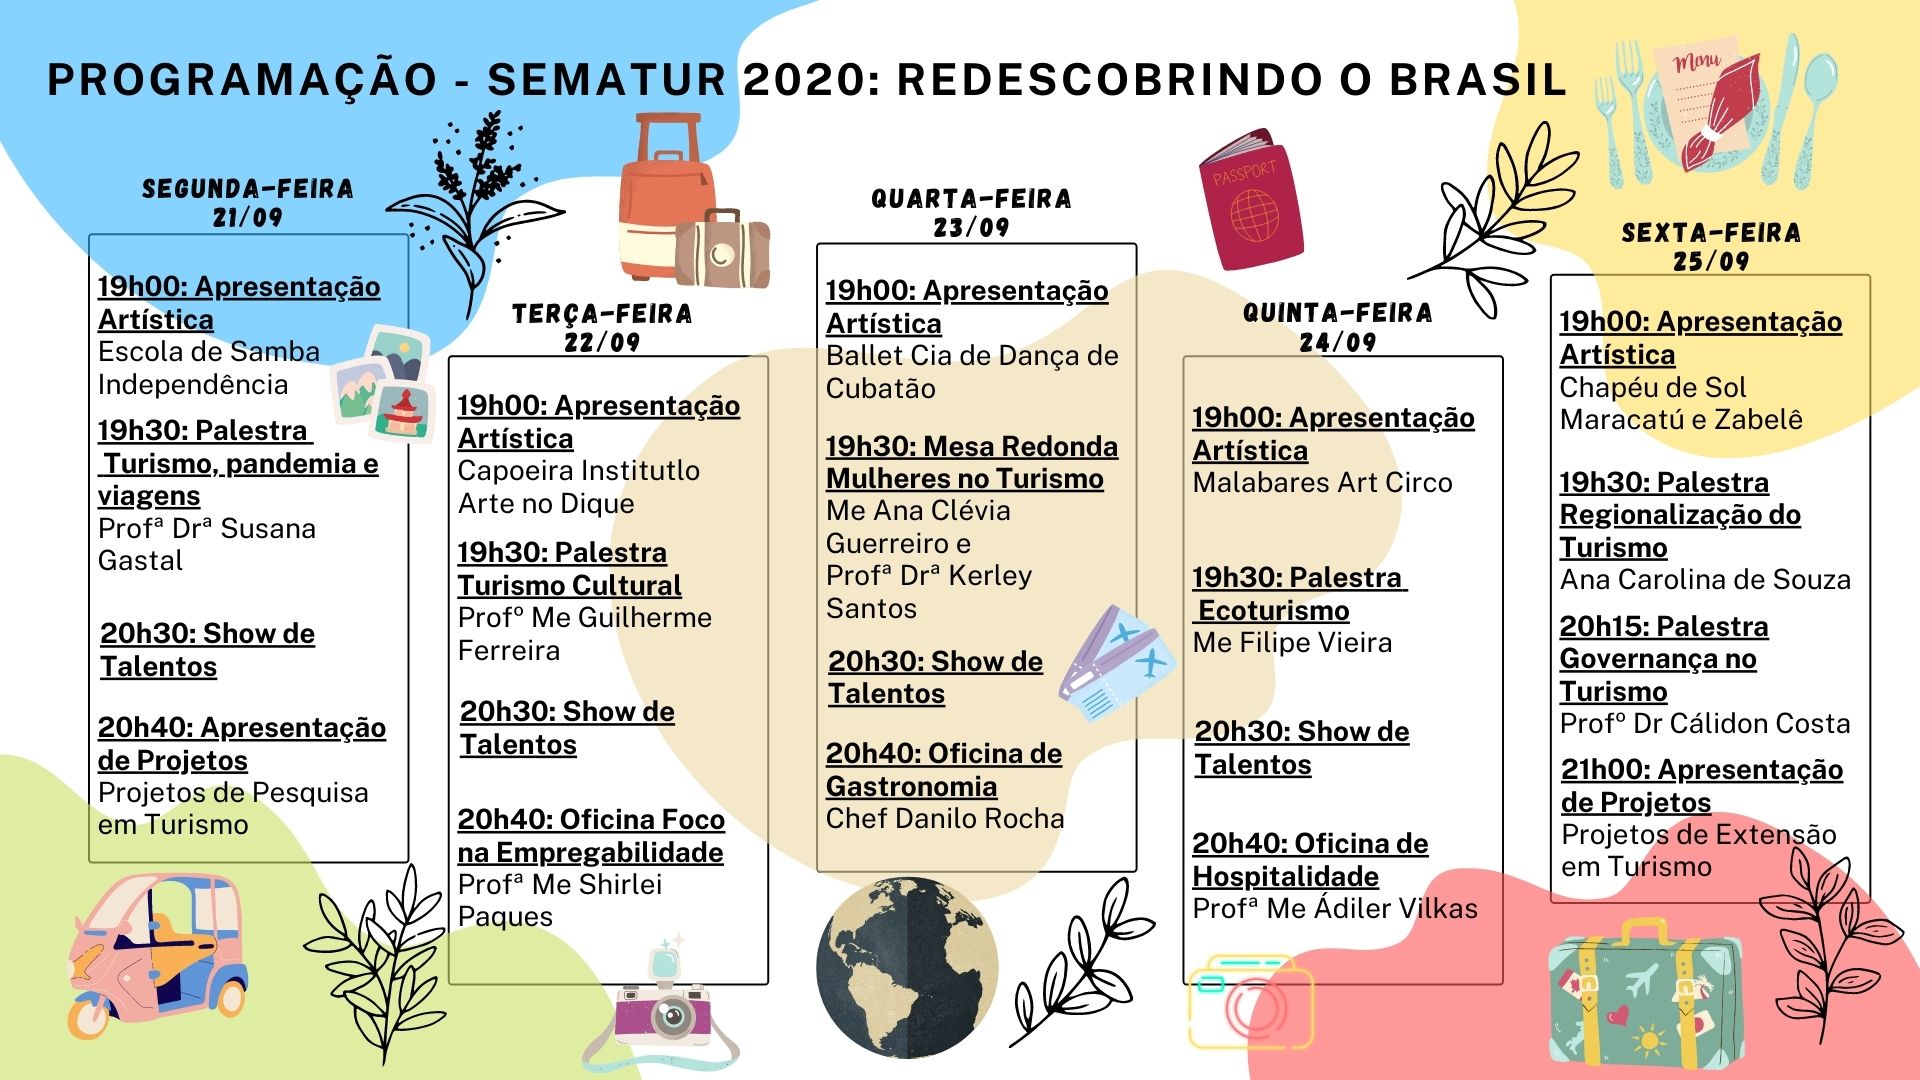 programação sematur 2020 redescobrindo o brasil